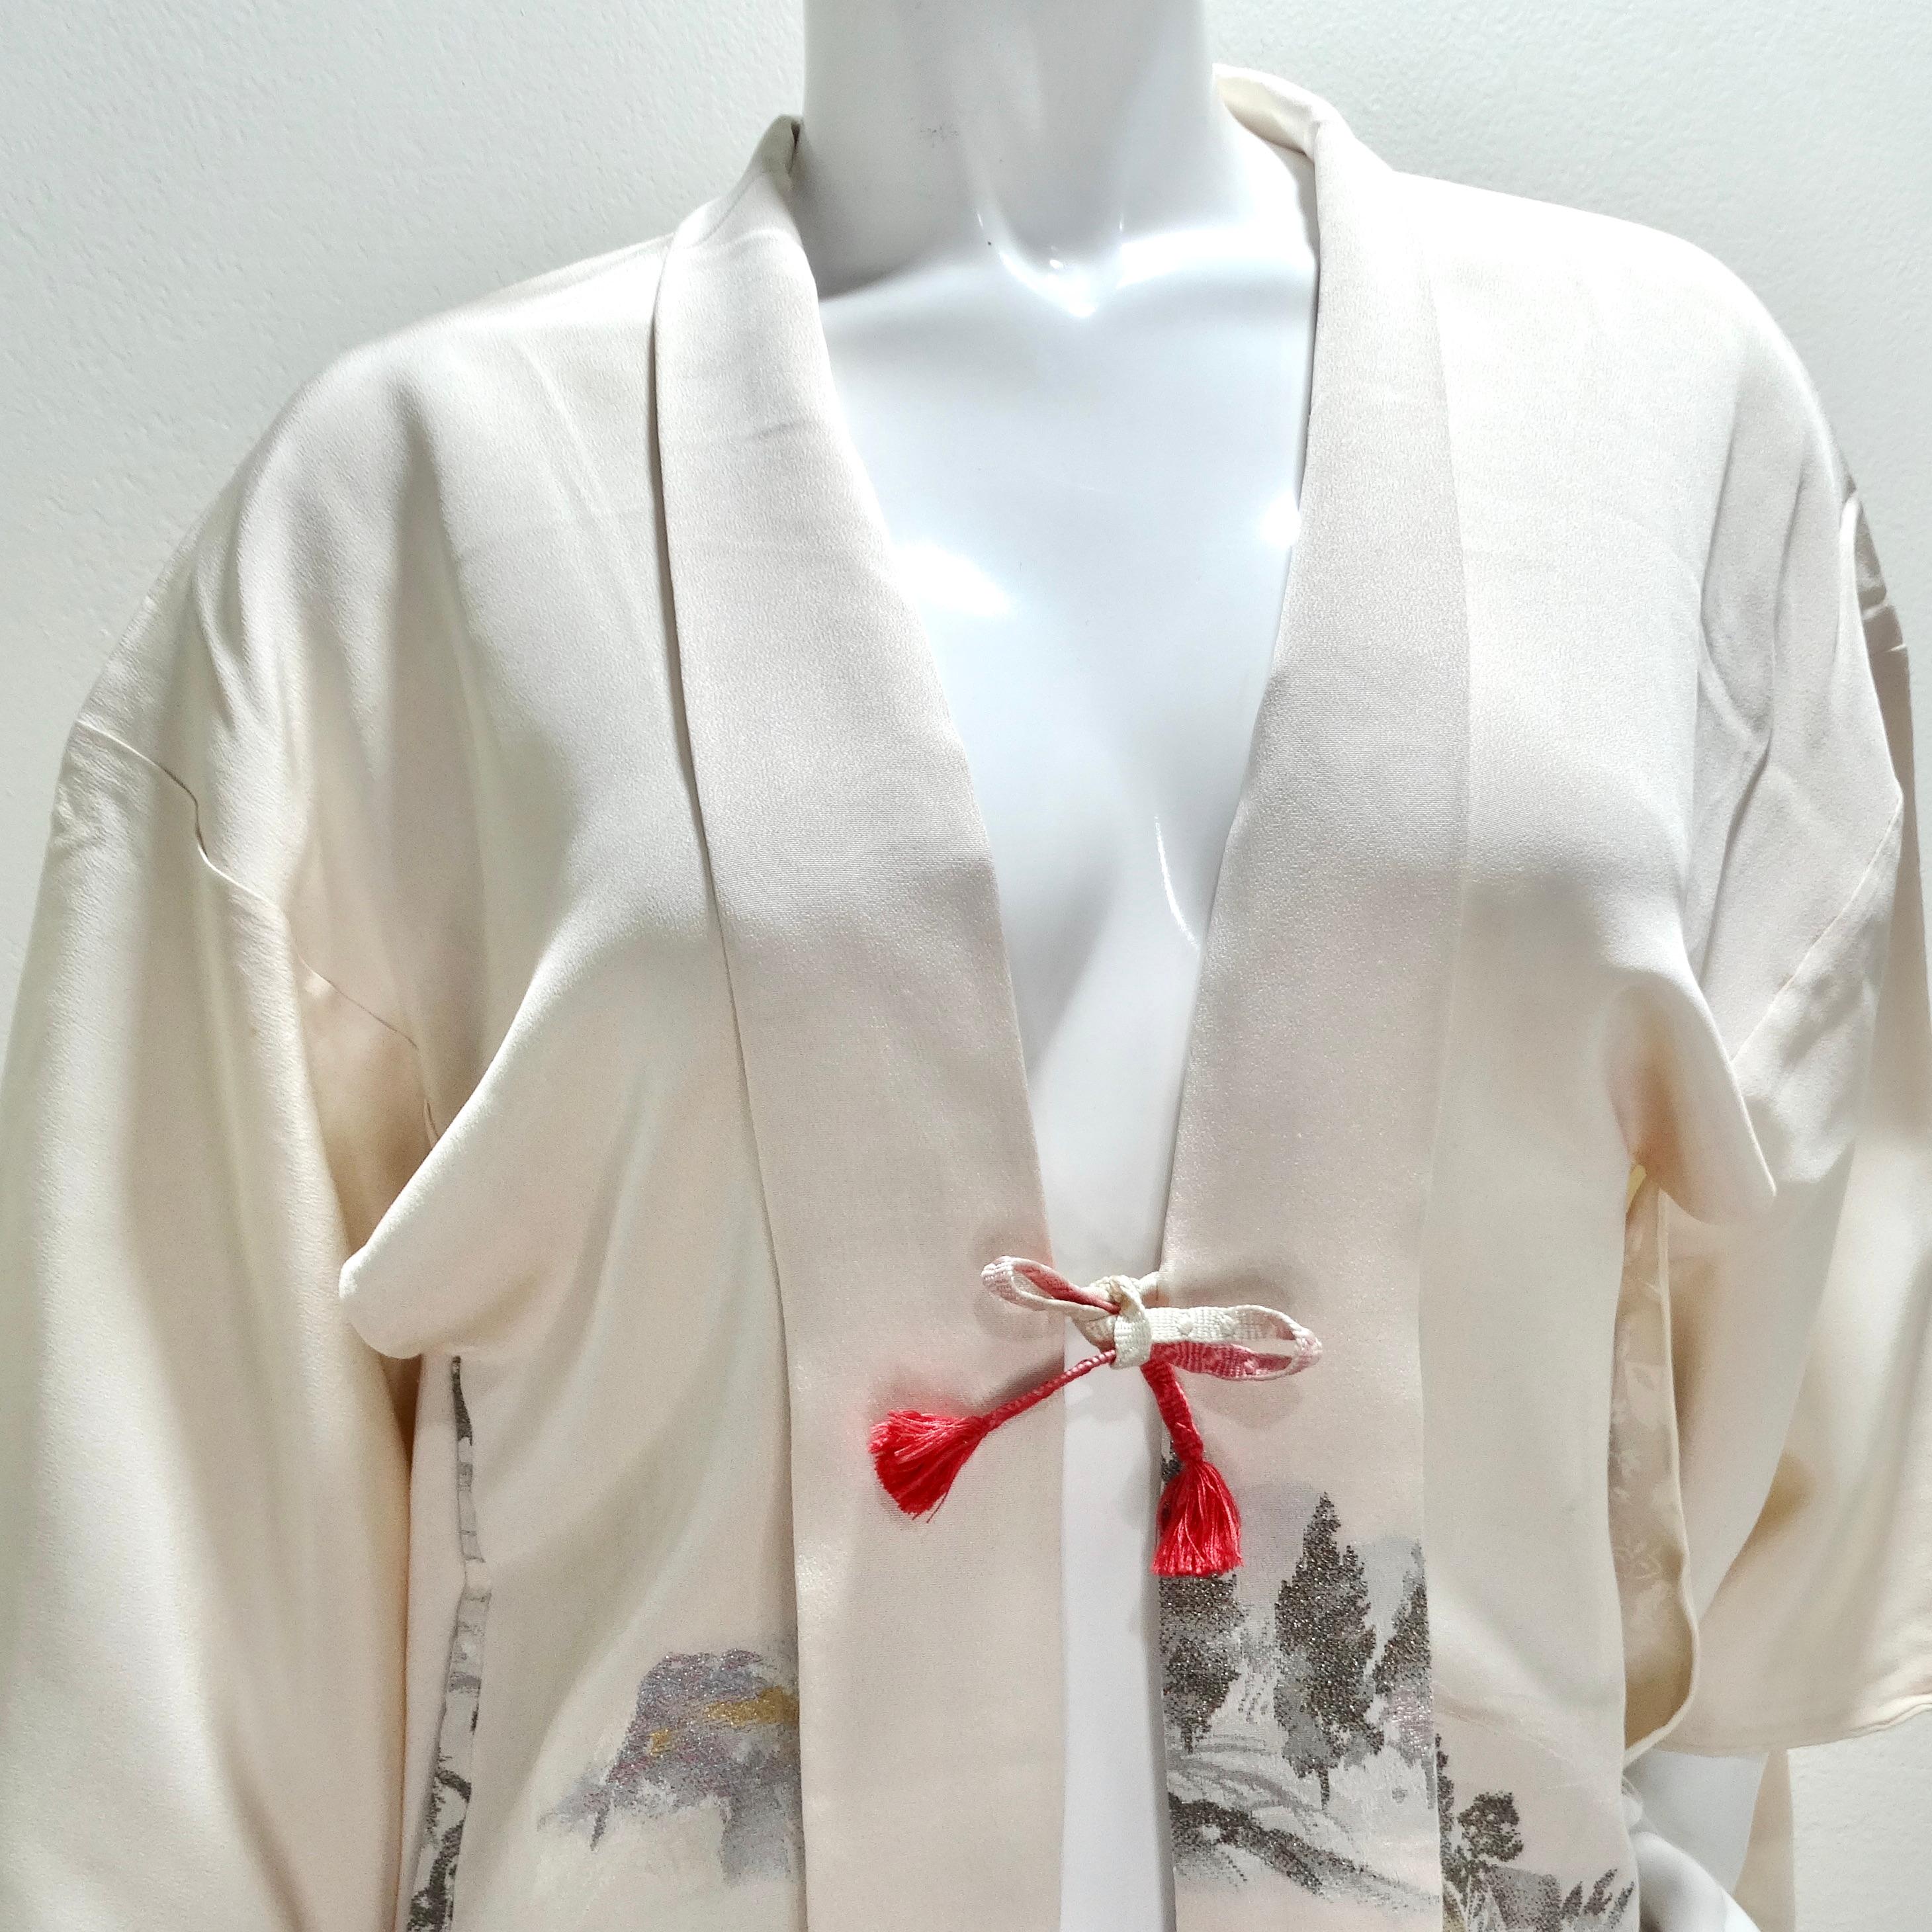 Der handgefertigte japanische Kimono aus Elfenbeinseide aus den 1970er Jahren ist ein exquisiter und einzigartiger Schatz, der die reiche Geschichte und Kunstfertigkeit der traditionellen japanischen Handwerkskunst widerspiegelt. Dieser